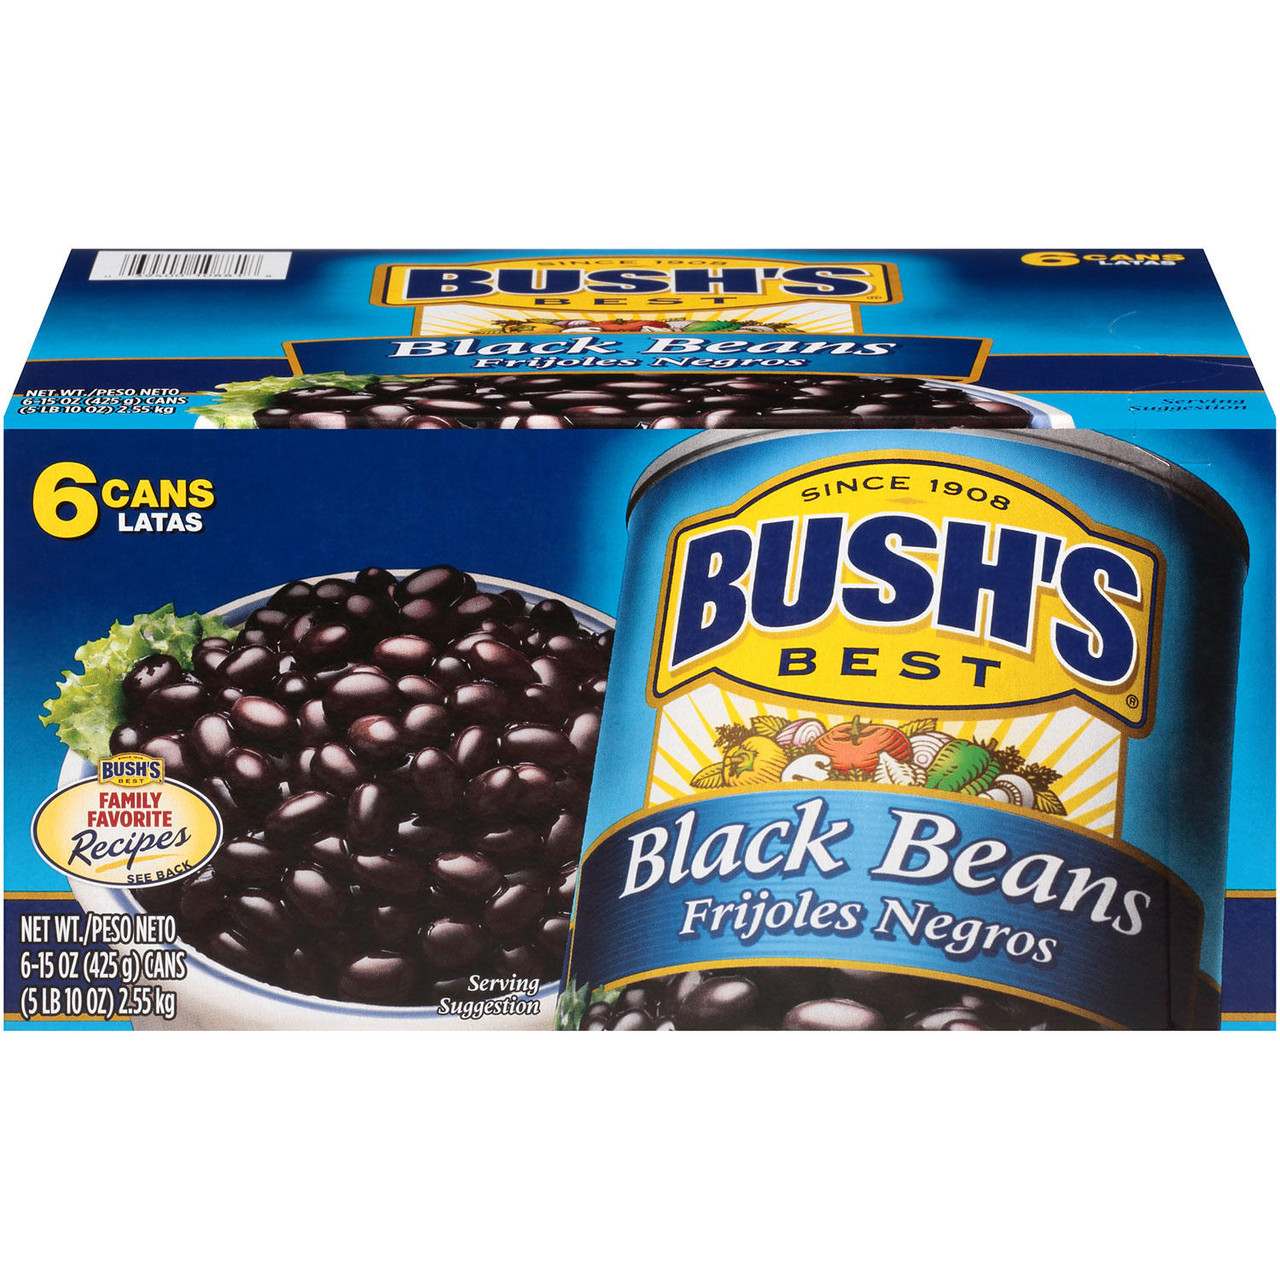 Bush's Black Beans (15 oz., 6 pk.) - *Pre-Order